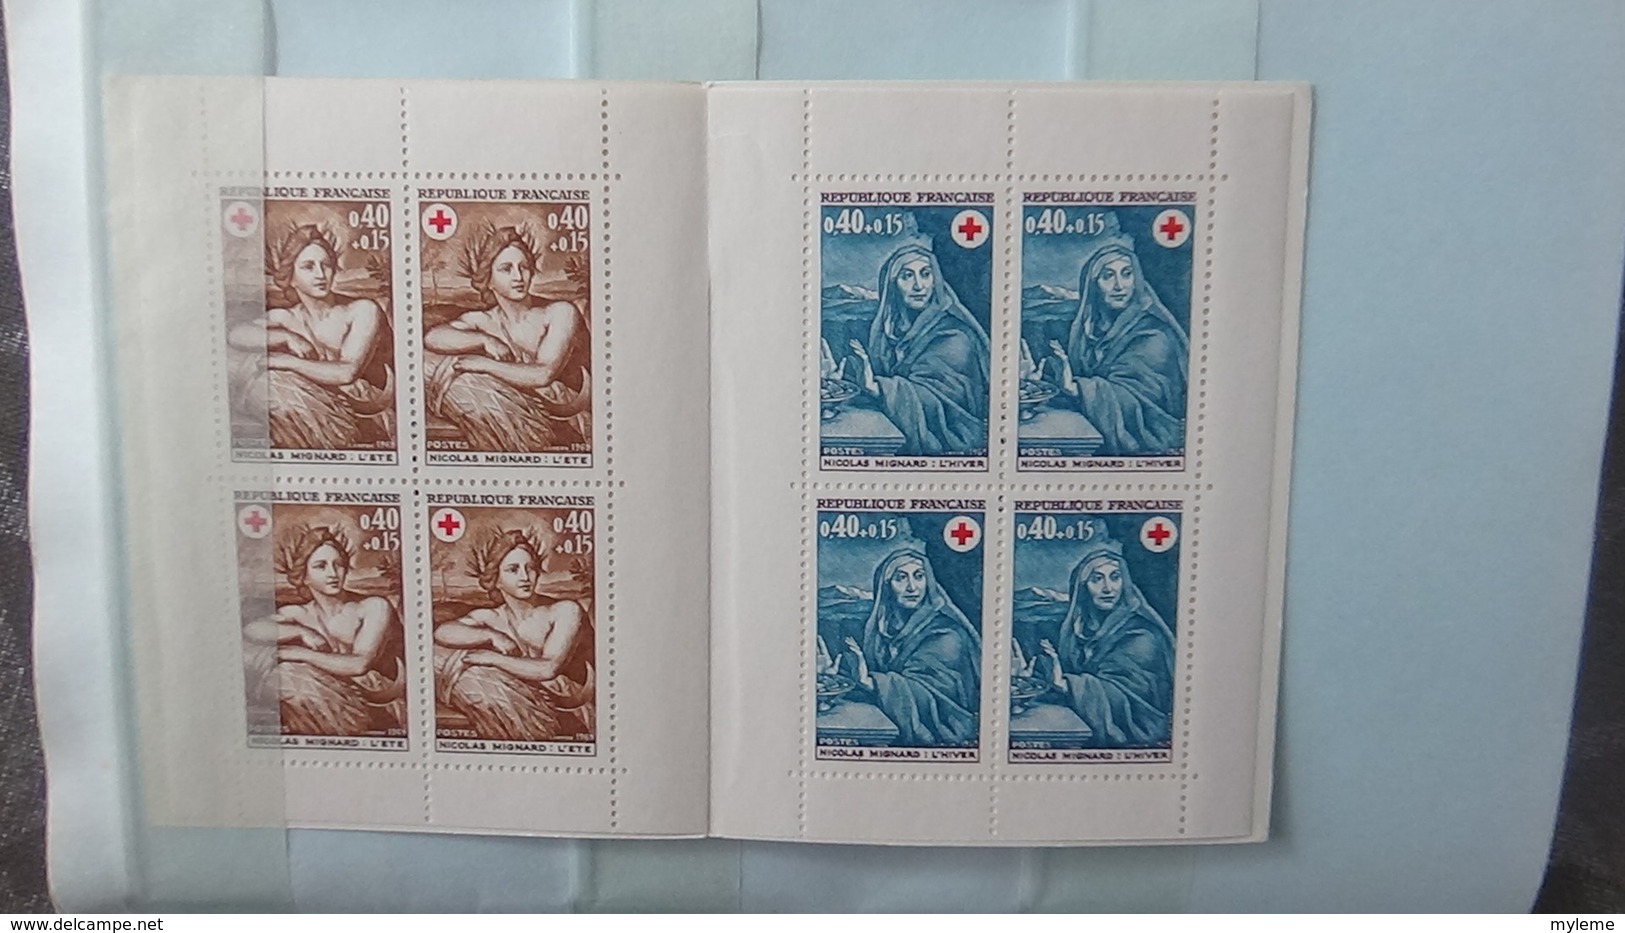 Dans un carnet à choix, bon lot de timbres ** dont séries grands hommes, croix rouge .... Côte très sympa !!!